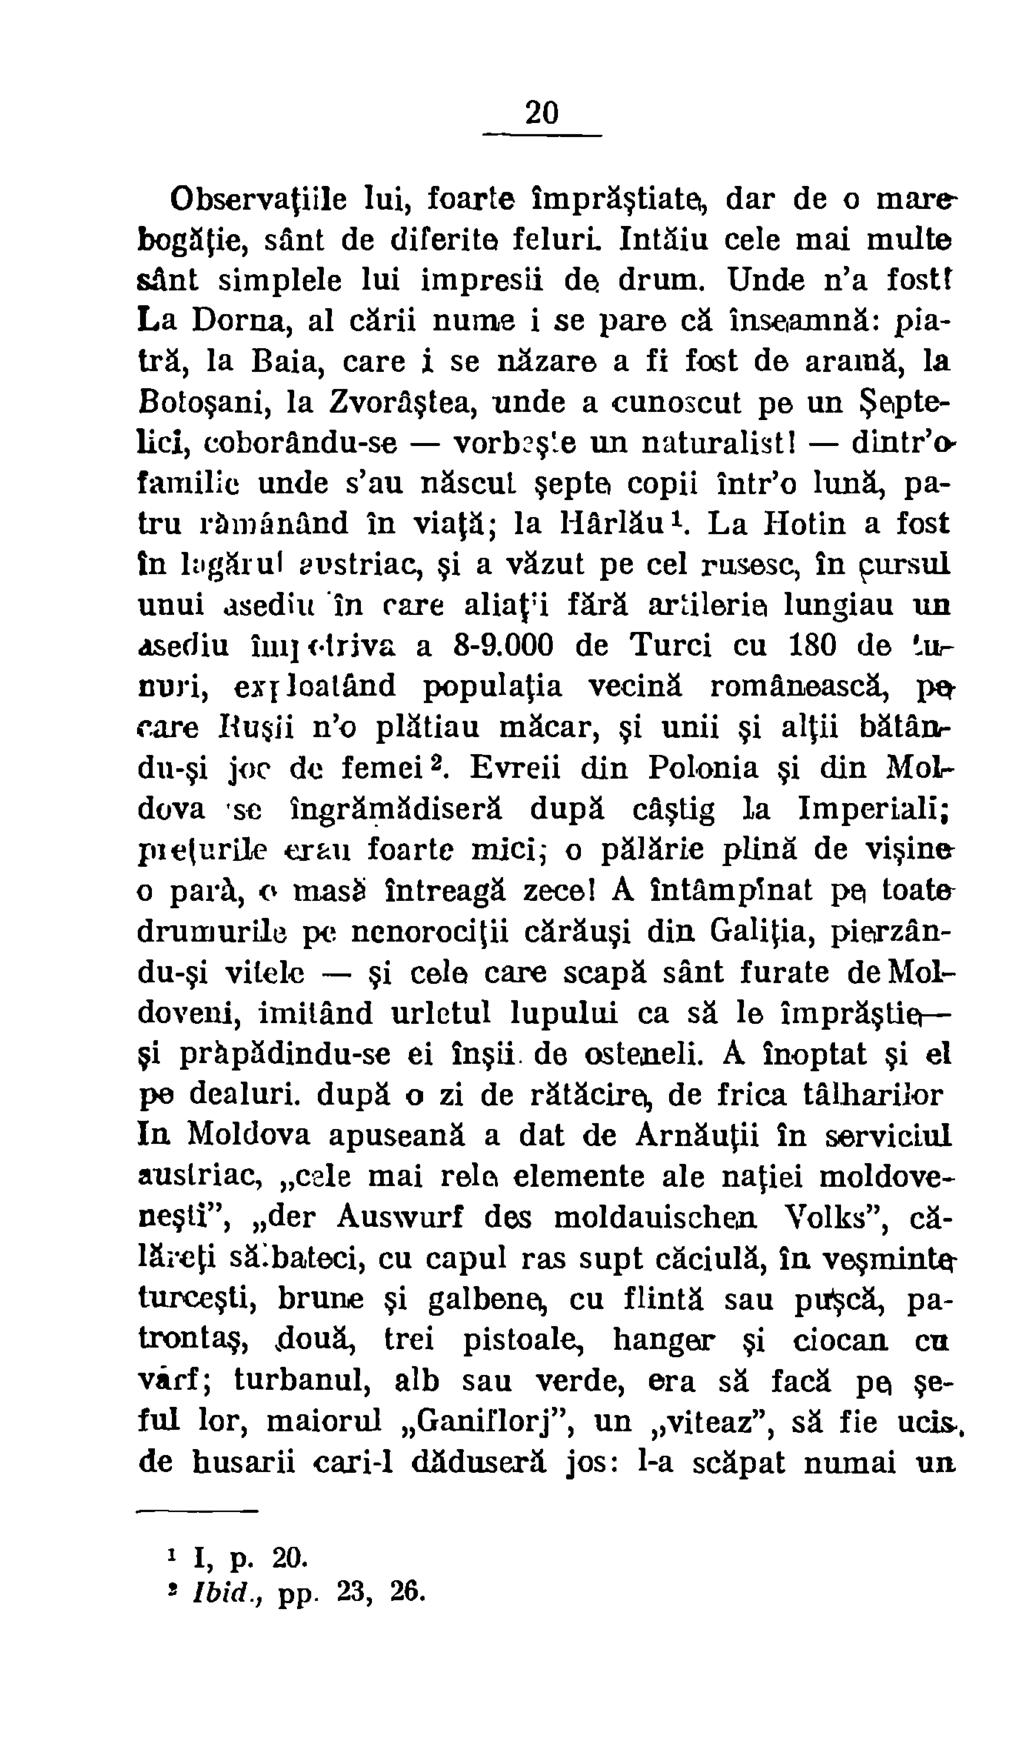 Medicina şi farmacia în trecutul românesc. Volumul 2 - Samarian, Pompei Gh. (1938)